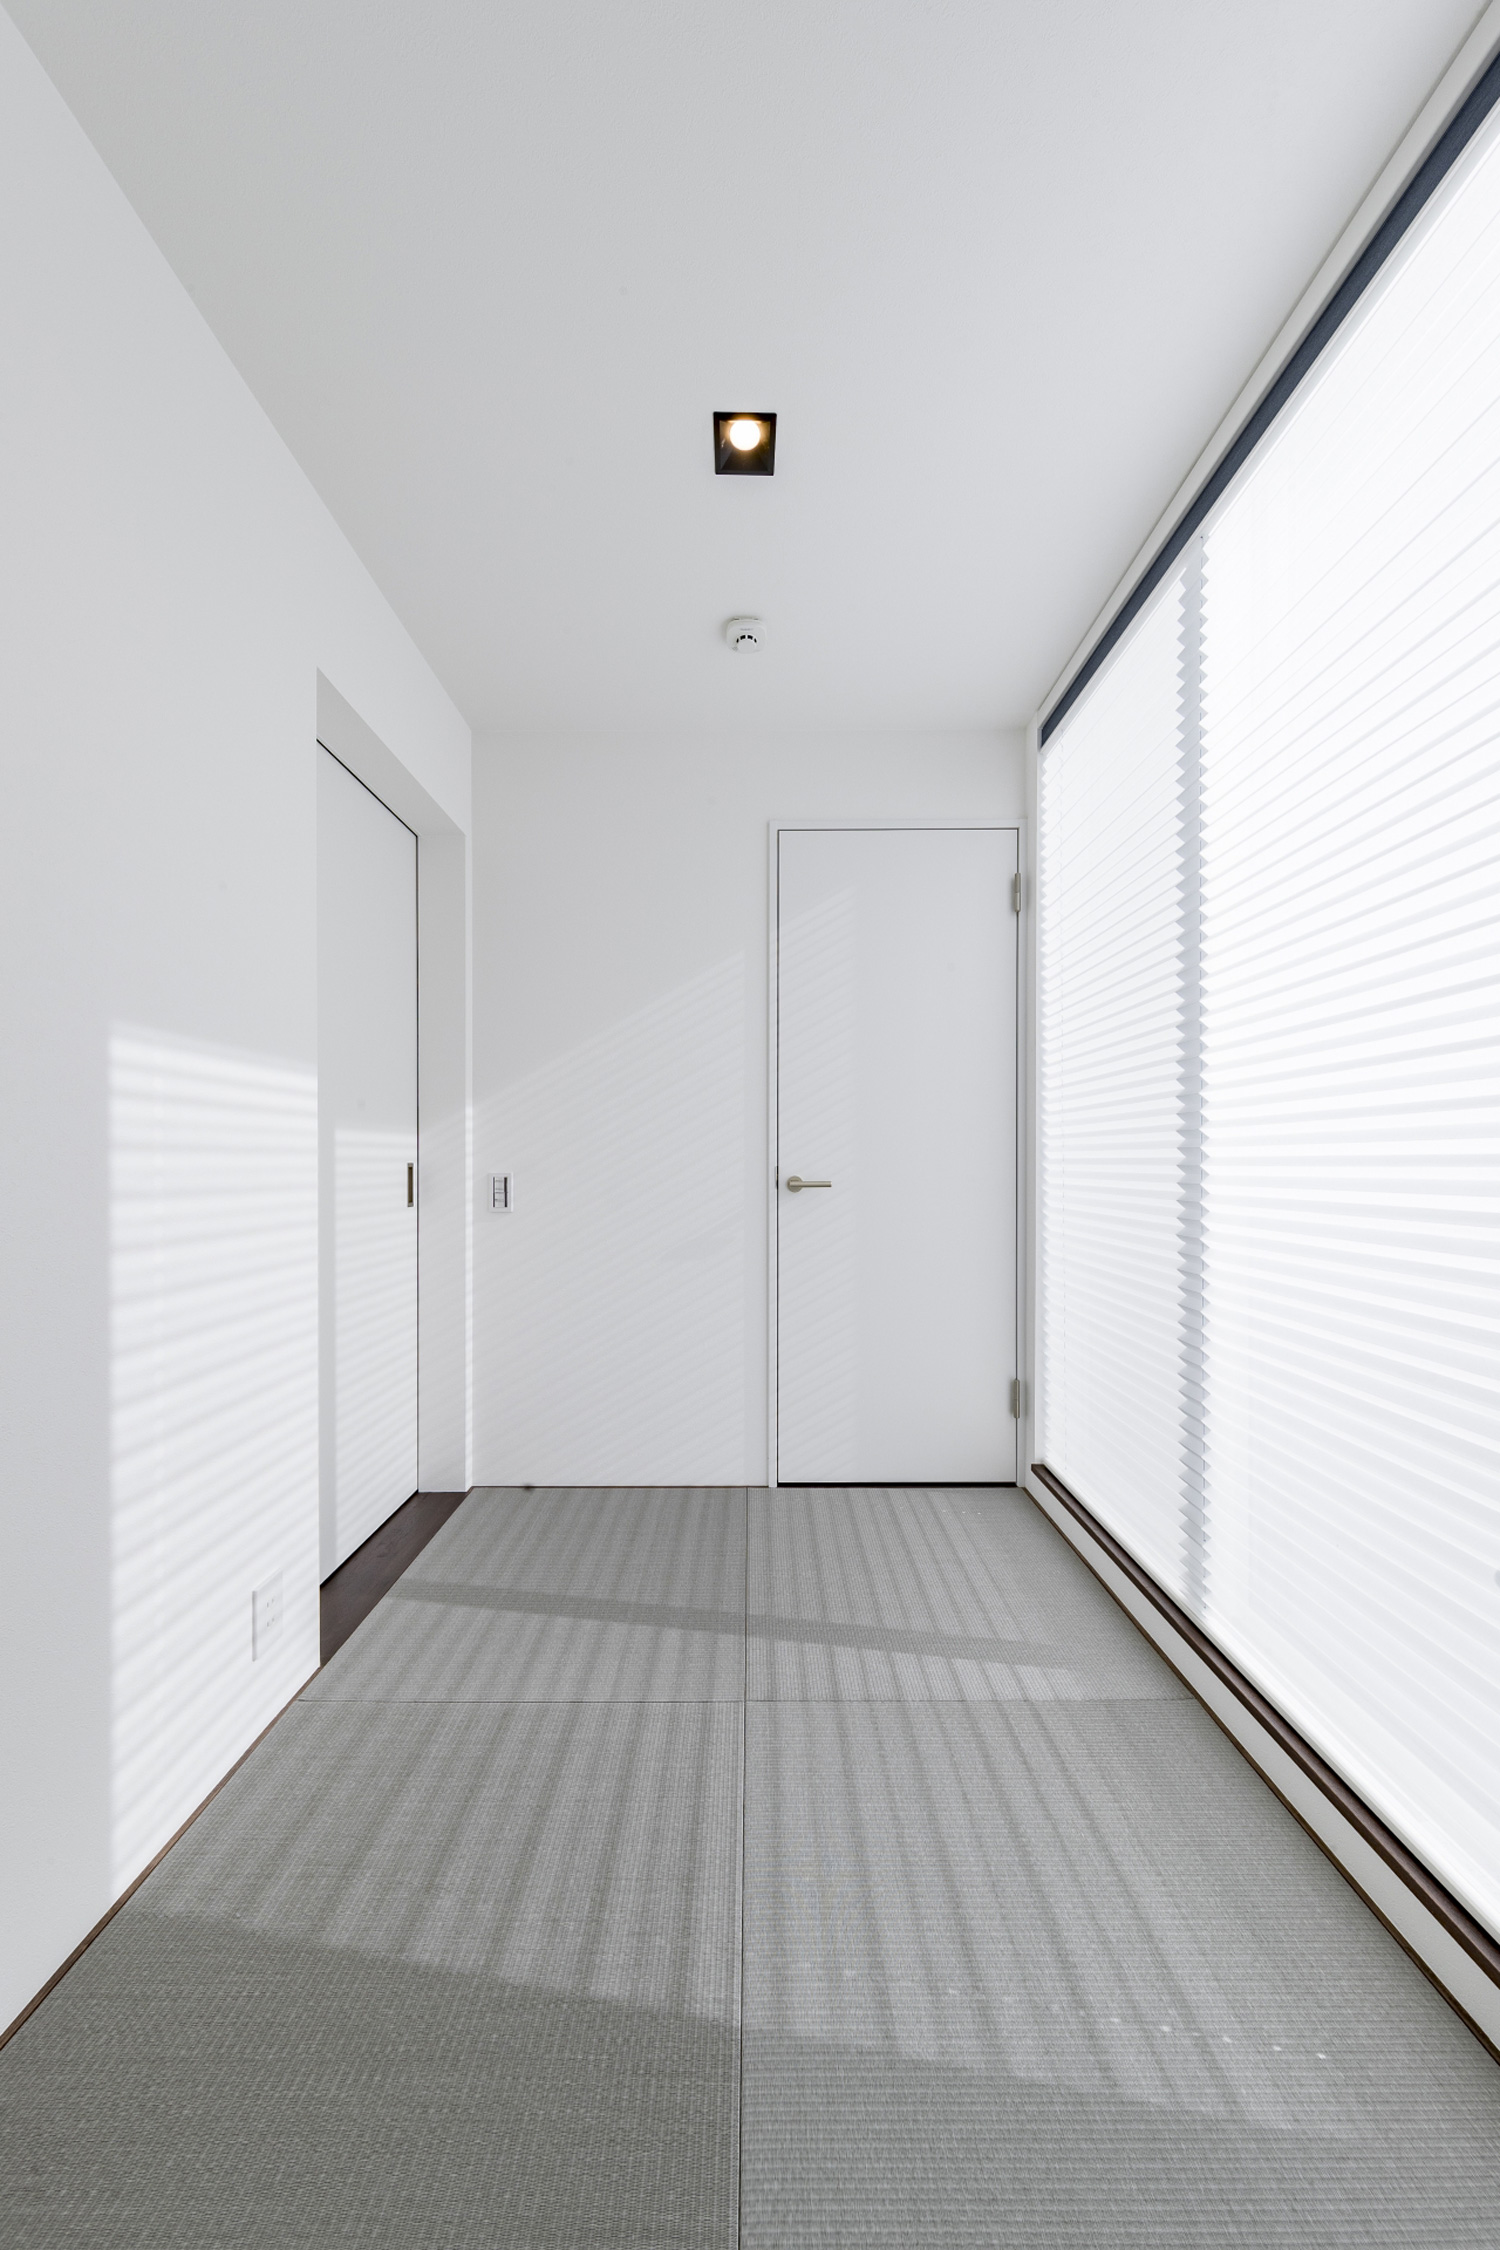 グレーの琉球畳で、大きな窓がとりつけられた白い壁の和室・デザイン住宅